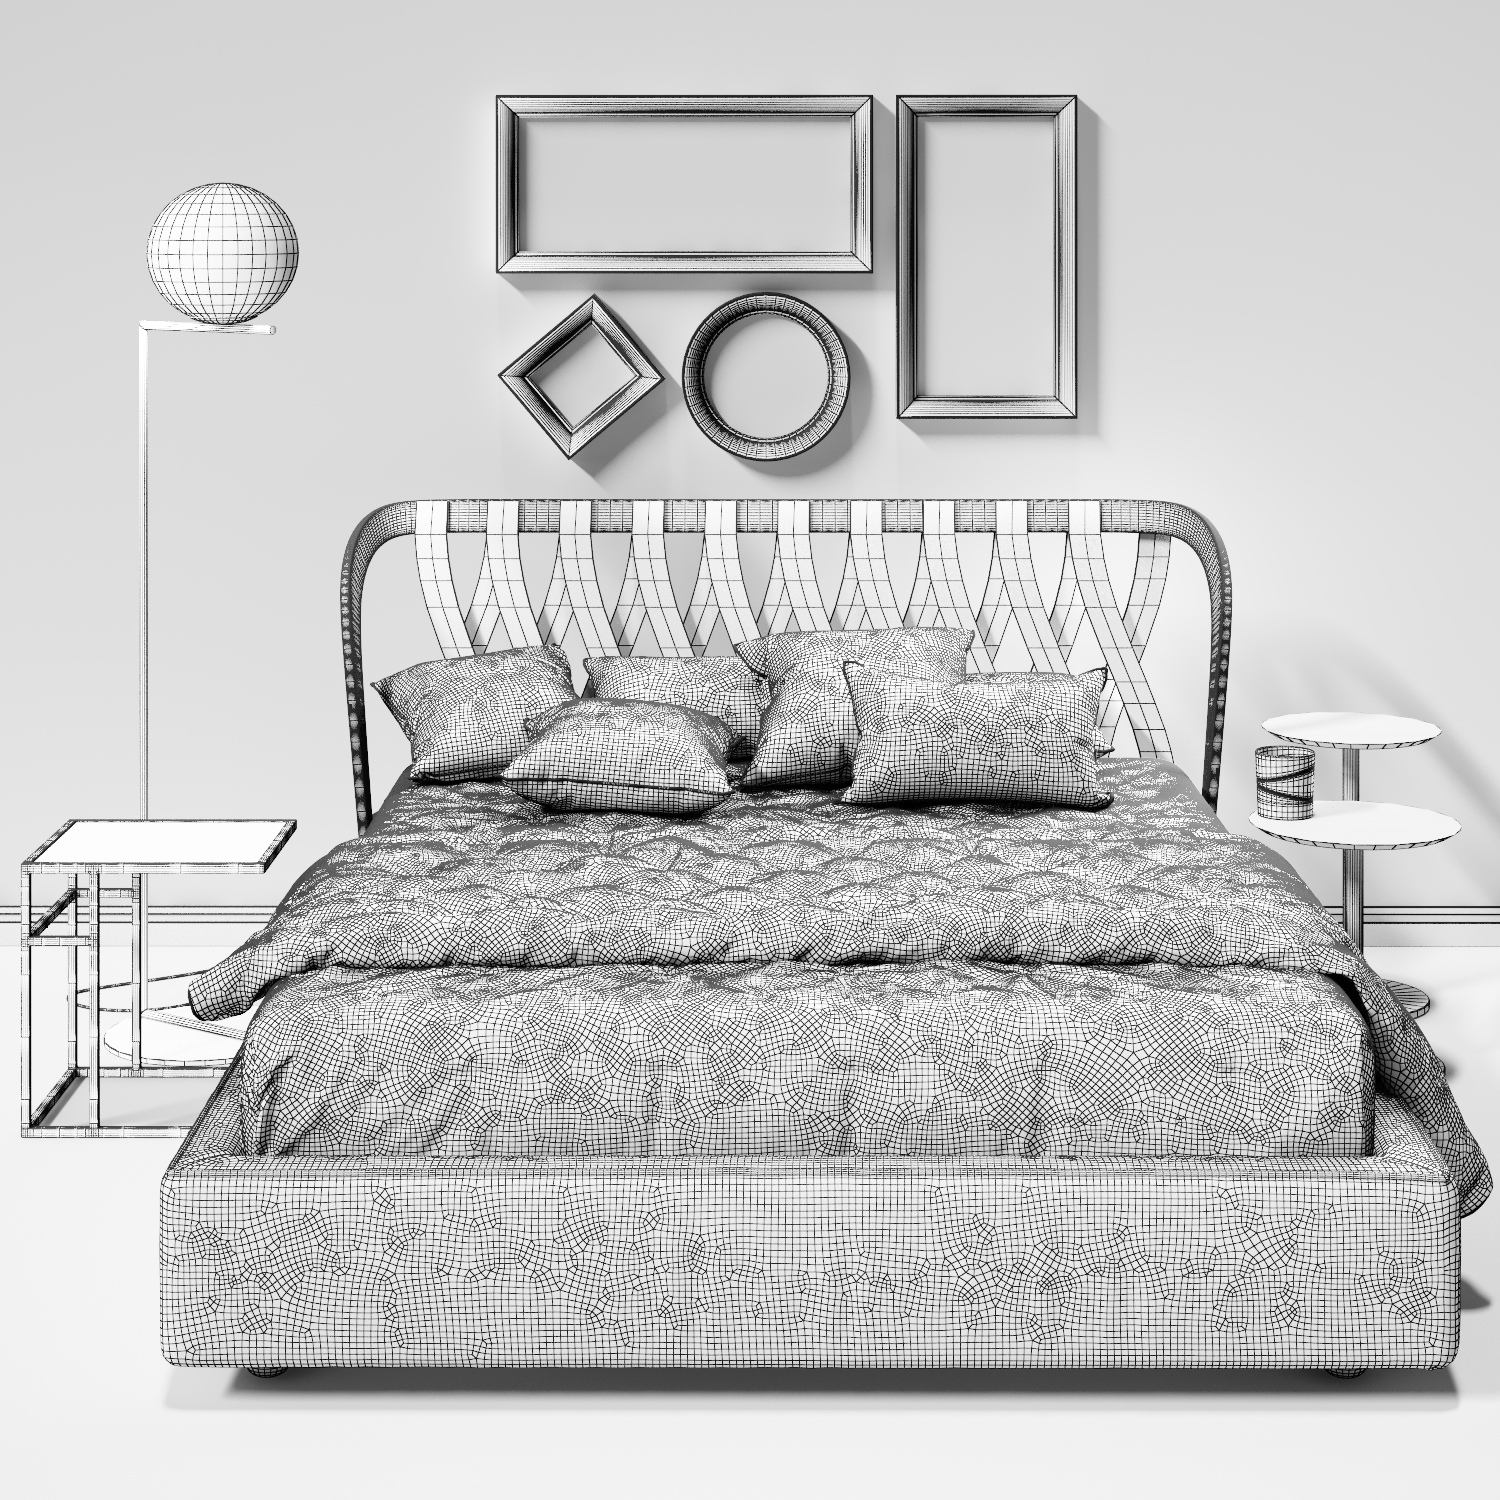 3dSkyHost: 3D Bed Model 72 Free Download